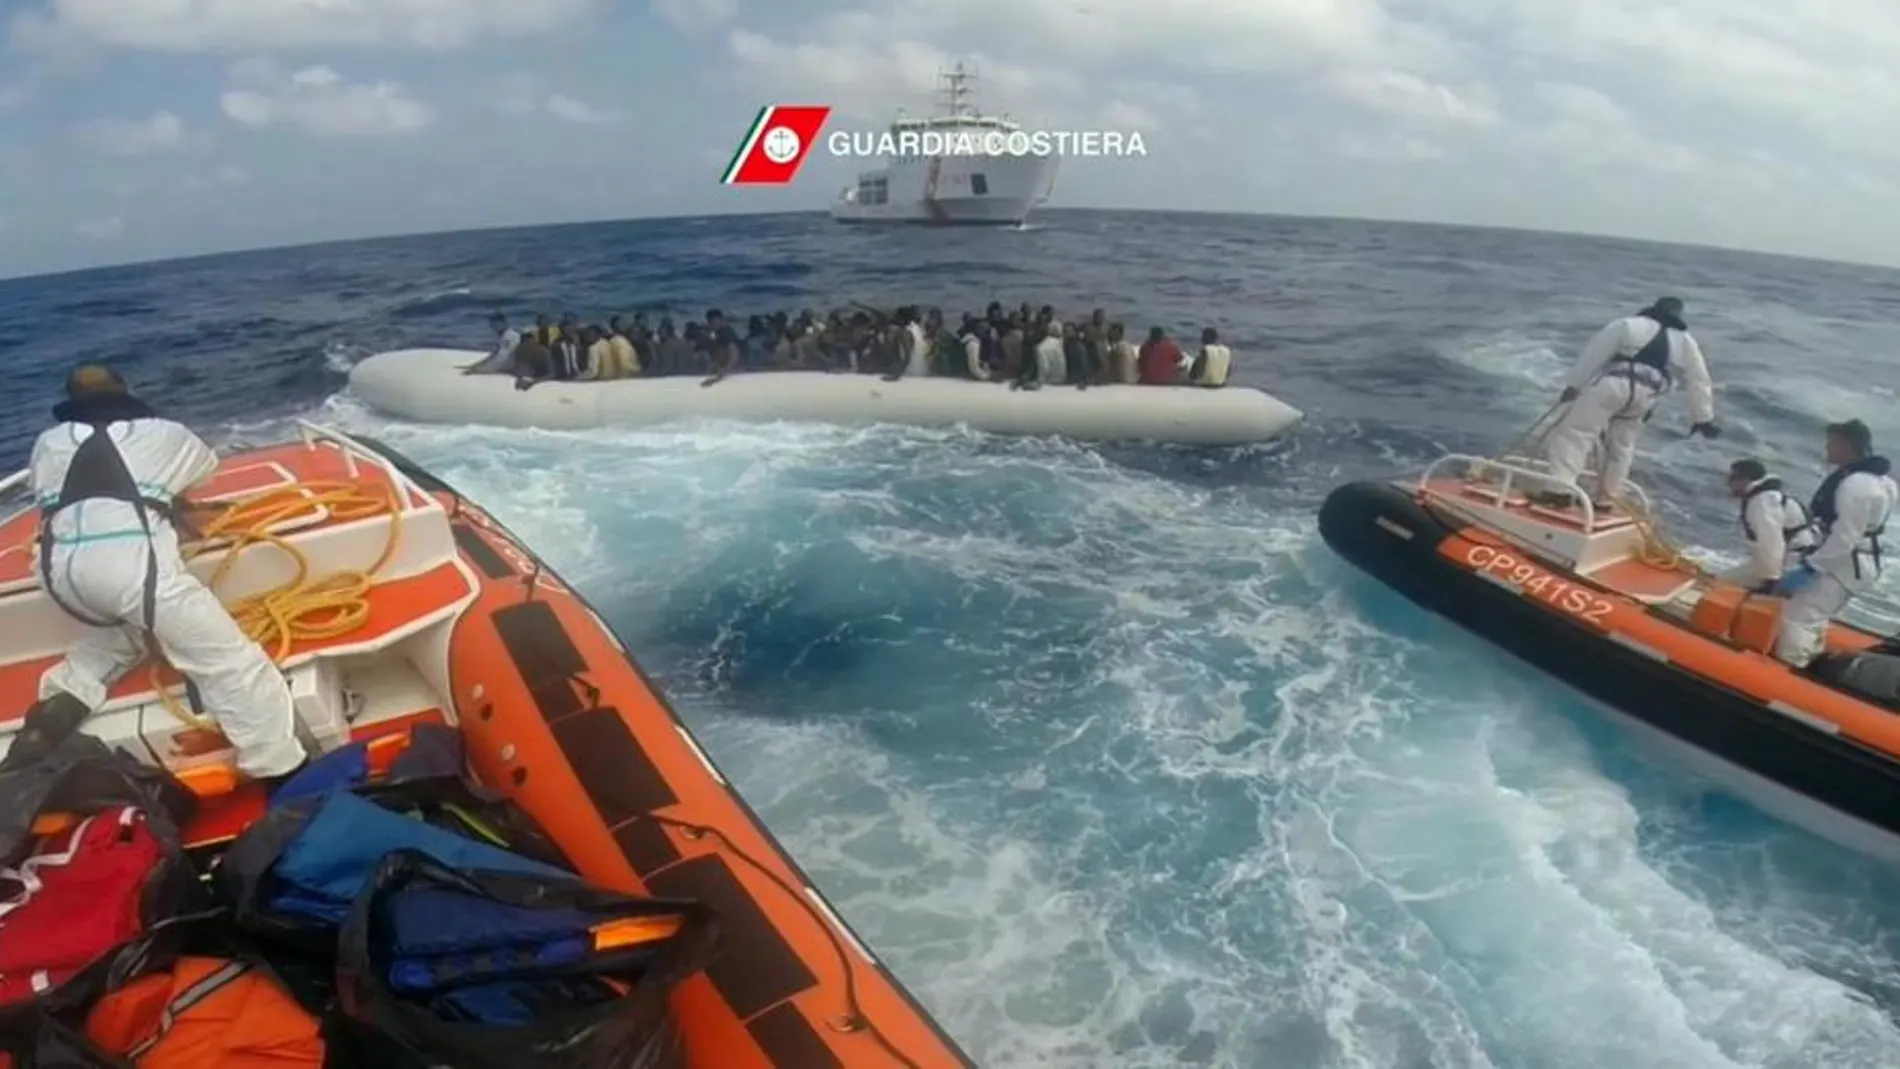 Fotograma facilitado por la Guardia Costera italiana disponible del 13 de septiembre de 2016, que muestra a una operación de rescate organizada por la Guardia Costera en el mar Mediterráneo